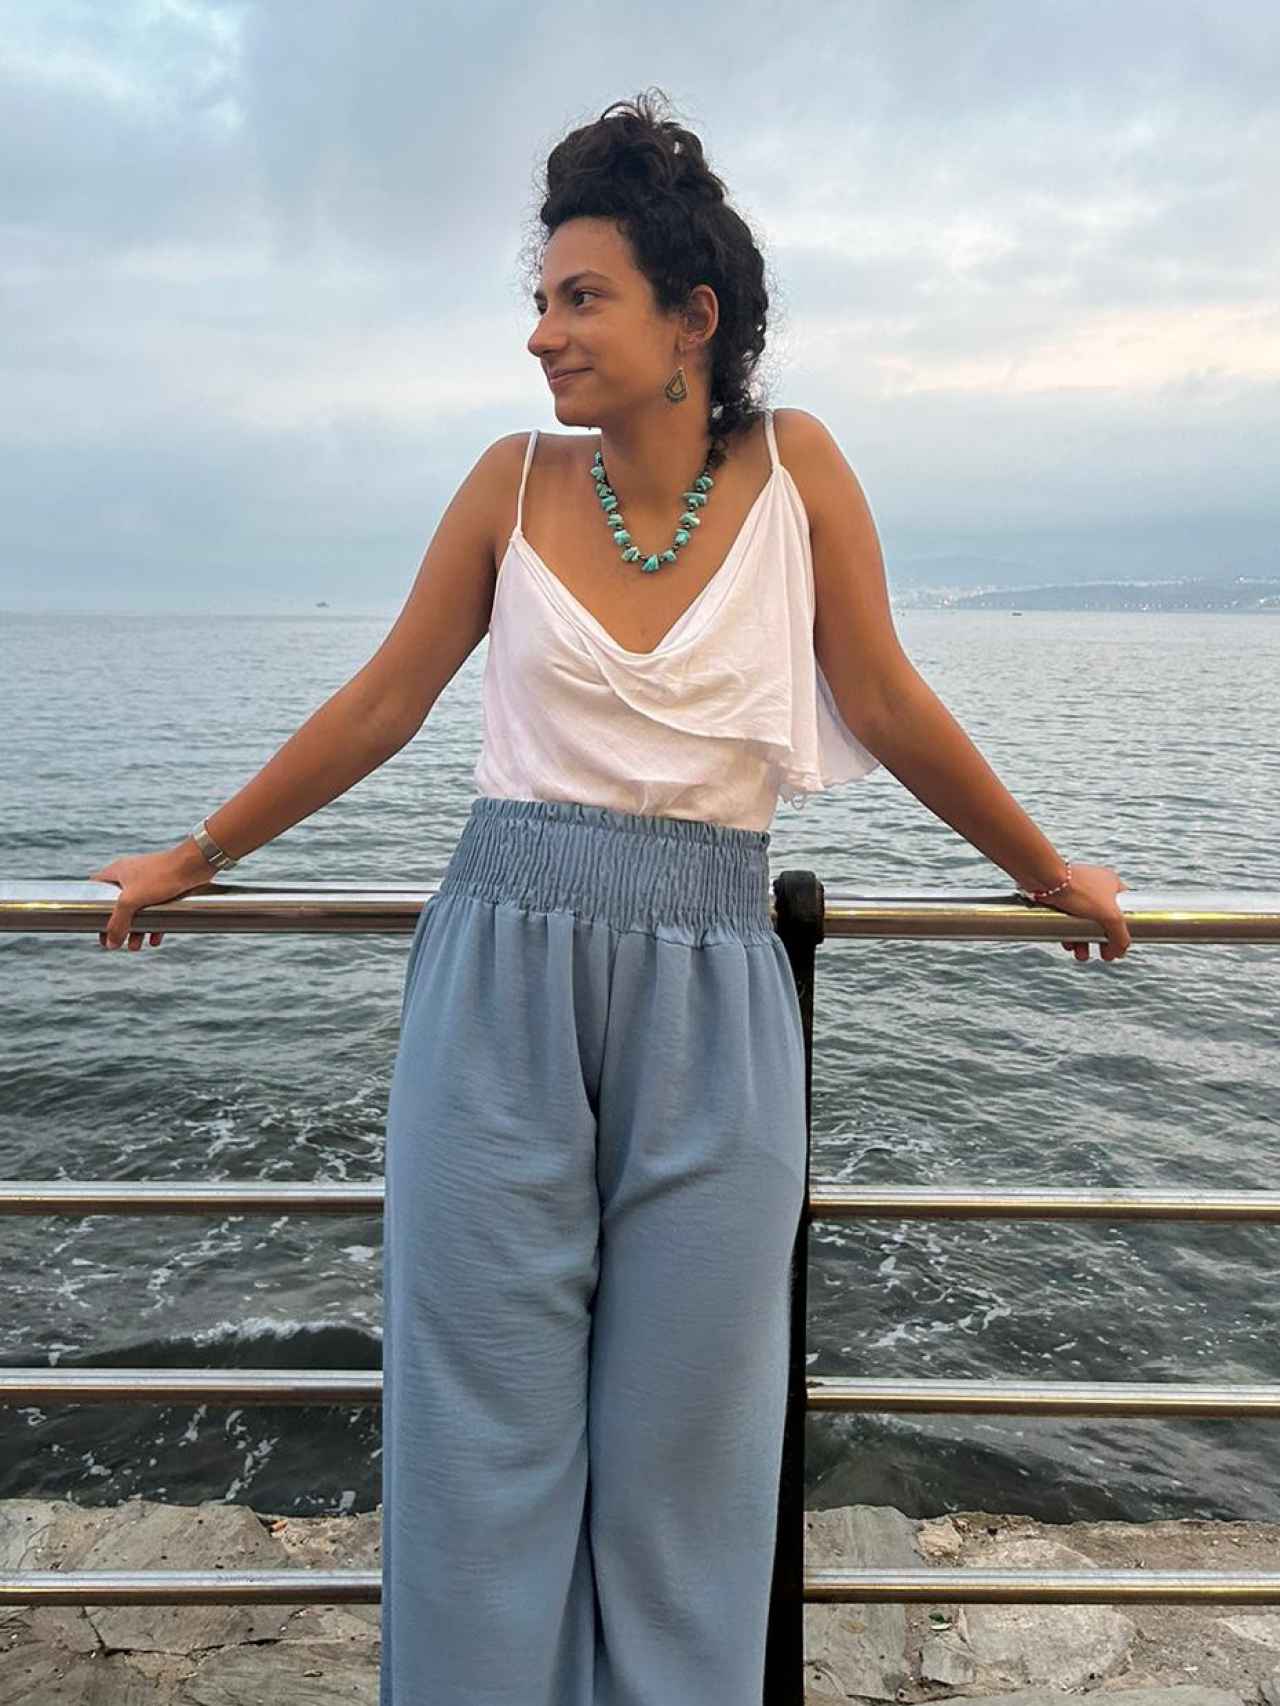 Sara El Khattabi en otra imagen junto al mar